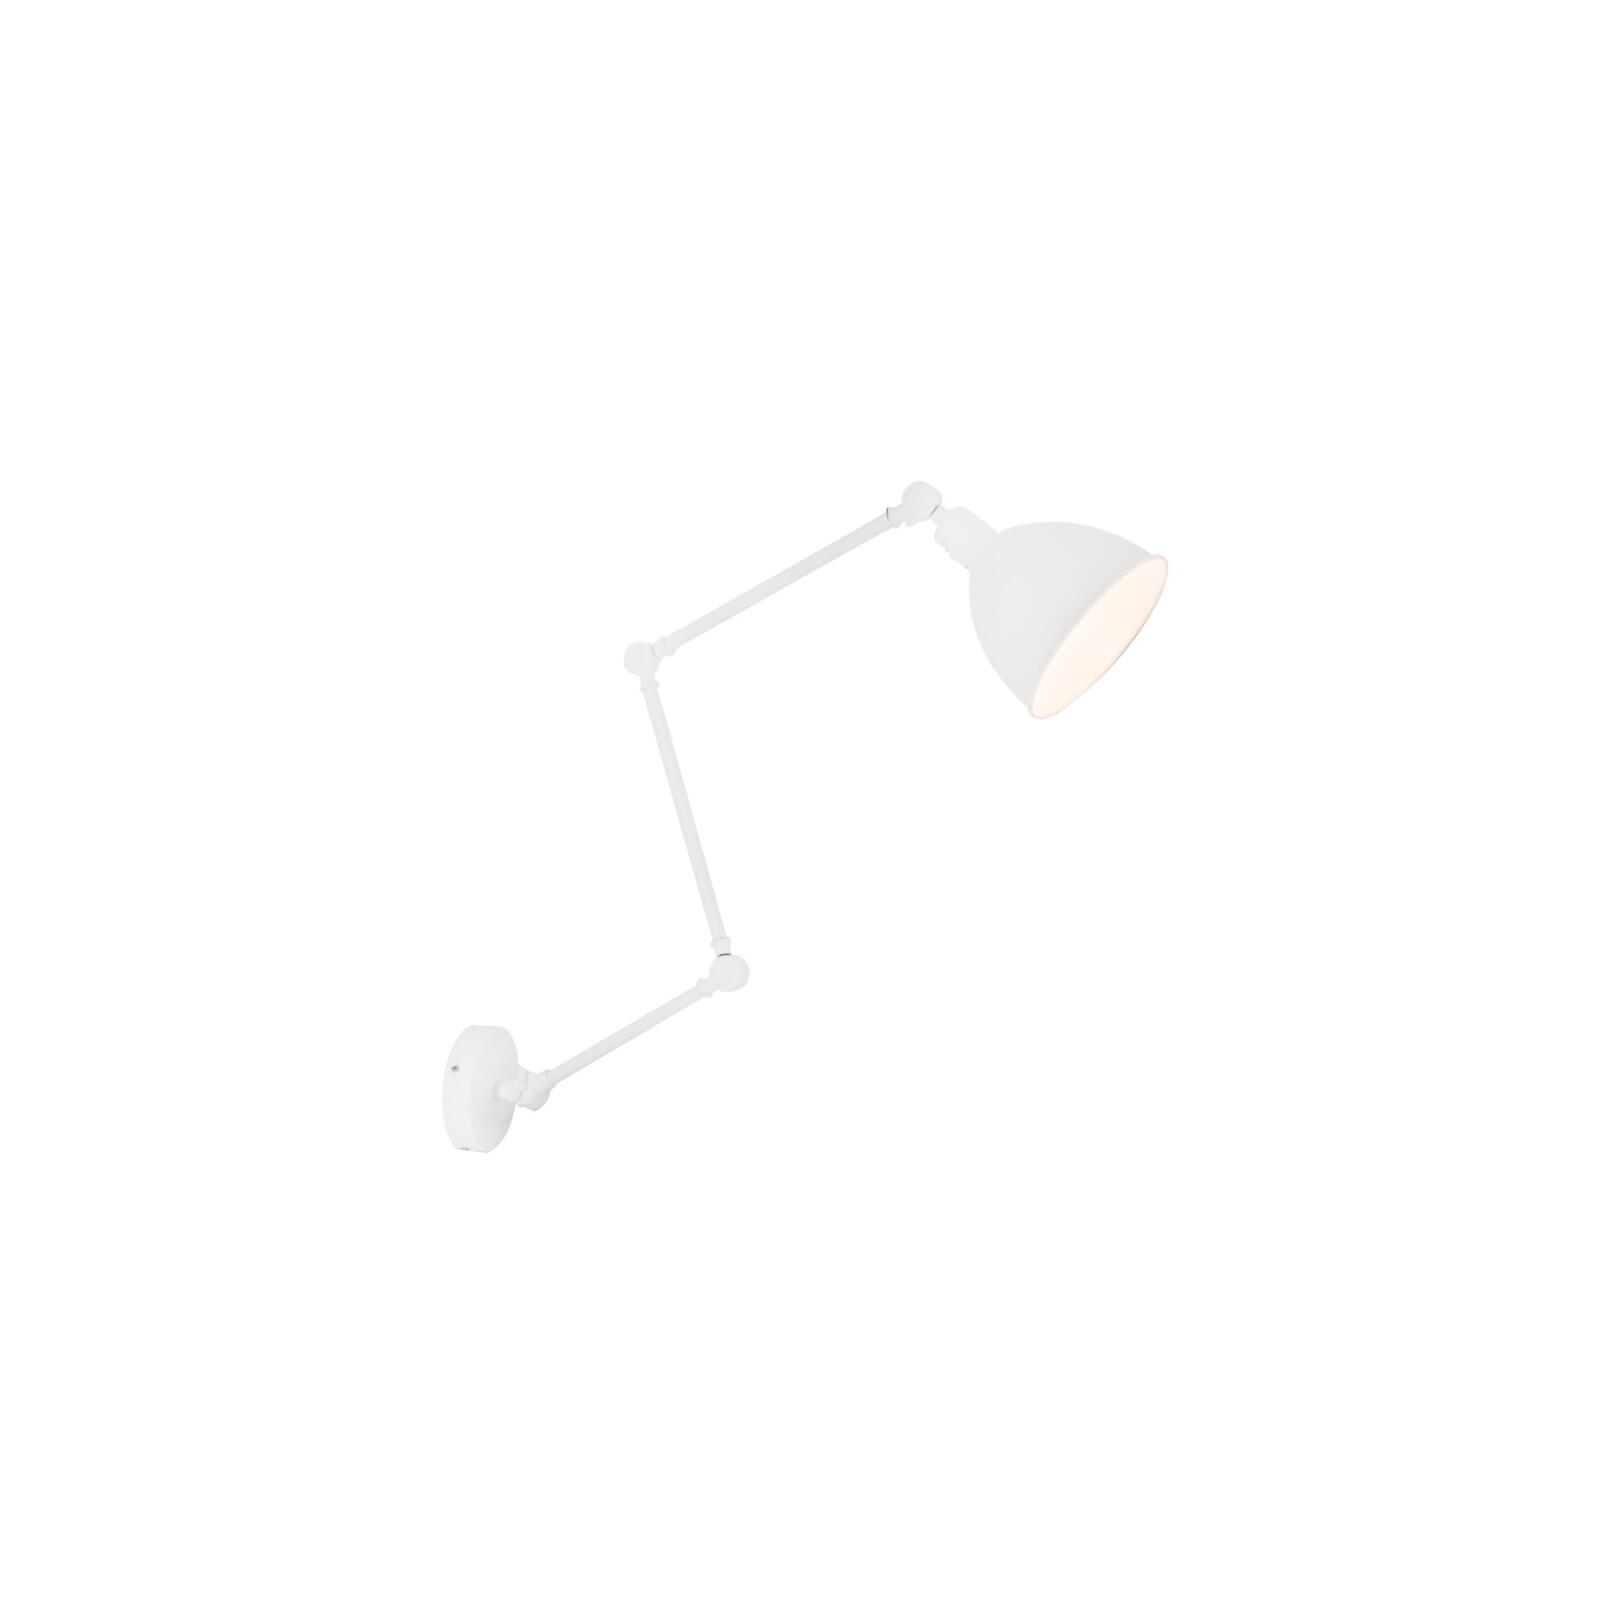 By Rydens verstellbare Bazar Lampen Leuchten E27 Onlineshop Schalter 122cm mit & - Wandleuchte weiß Länge